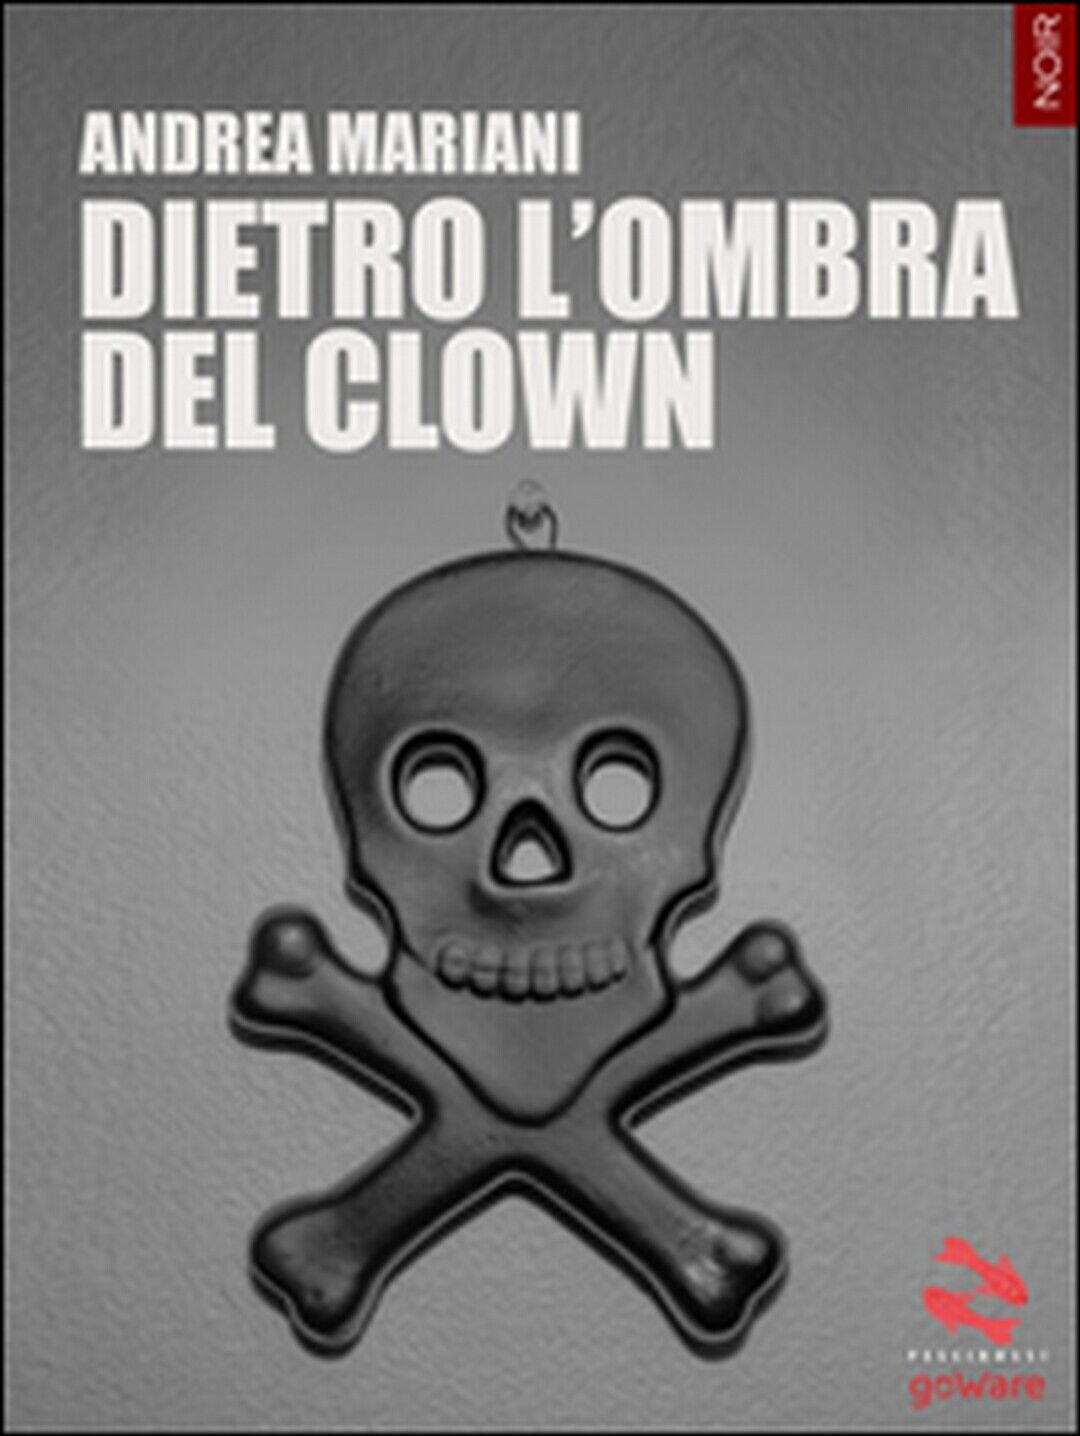 Dietro L'ombra del clown  di Andrea Mariani,  2016,  Goware